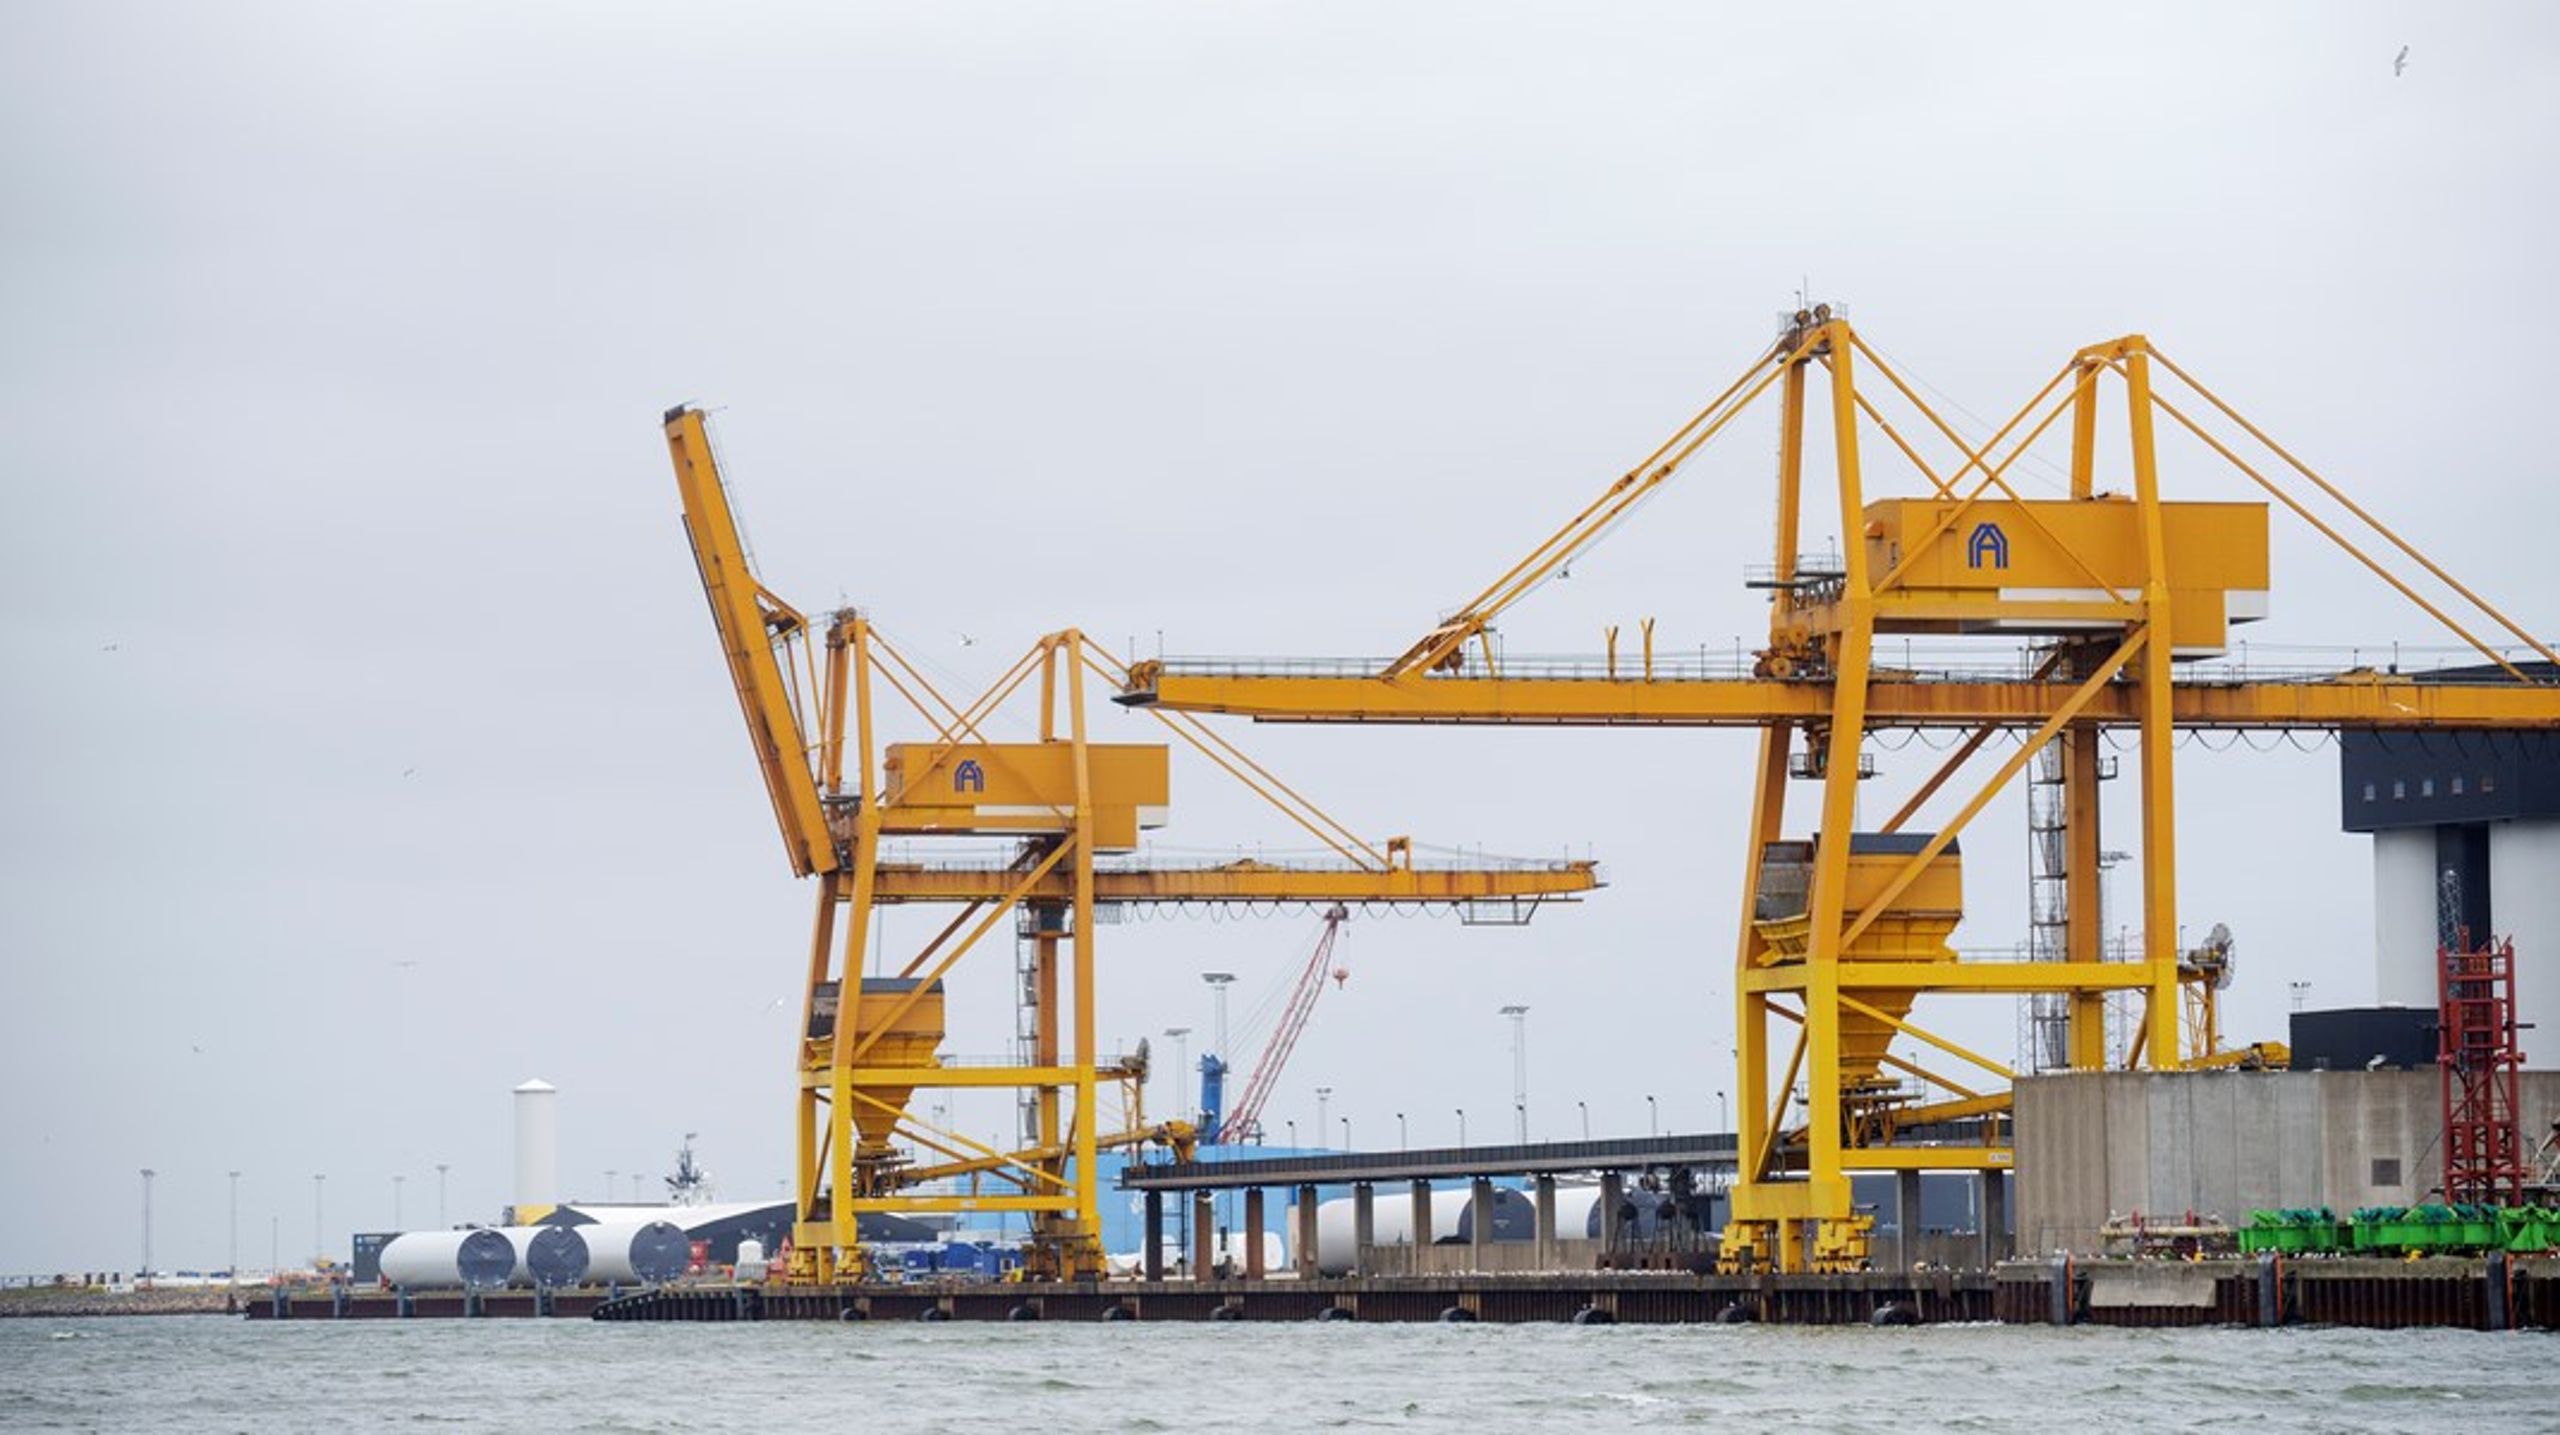 Havnene er en del af Danmarks kritiske infrastruktur, som skal hjælpe den grønne omstilling på vej. Det kræver vanddybde, bæreevne, arealer og en veluddannet arbejdsstyrke, skriver&nbsp;Tine Kirk.